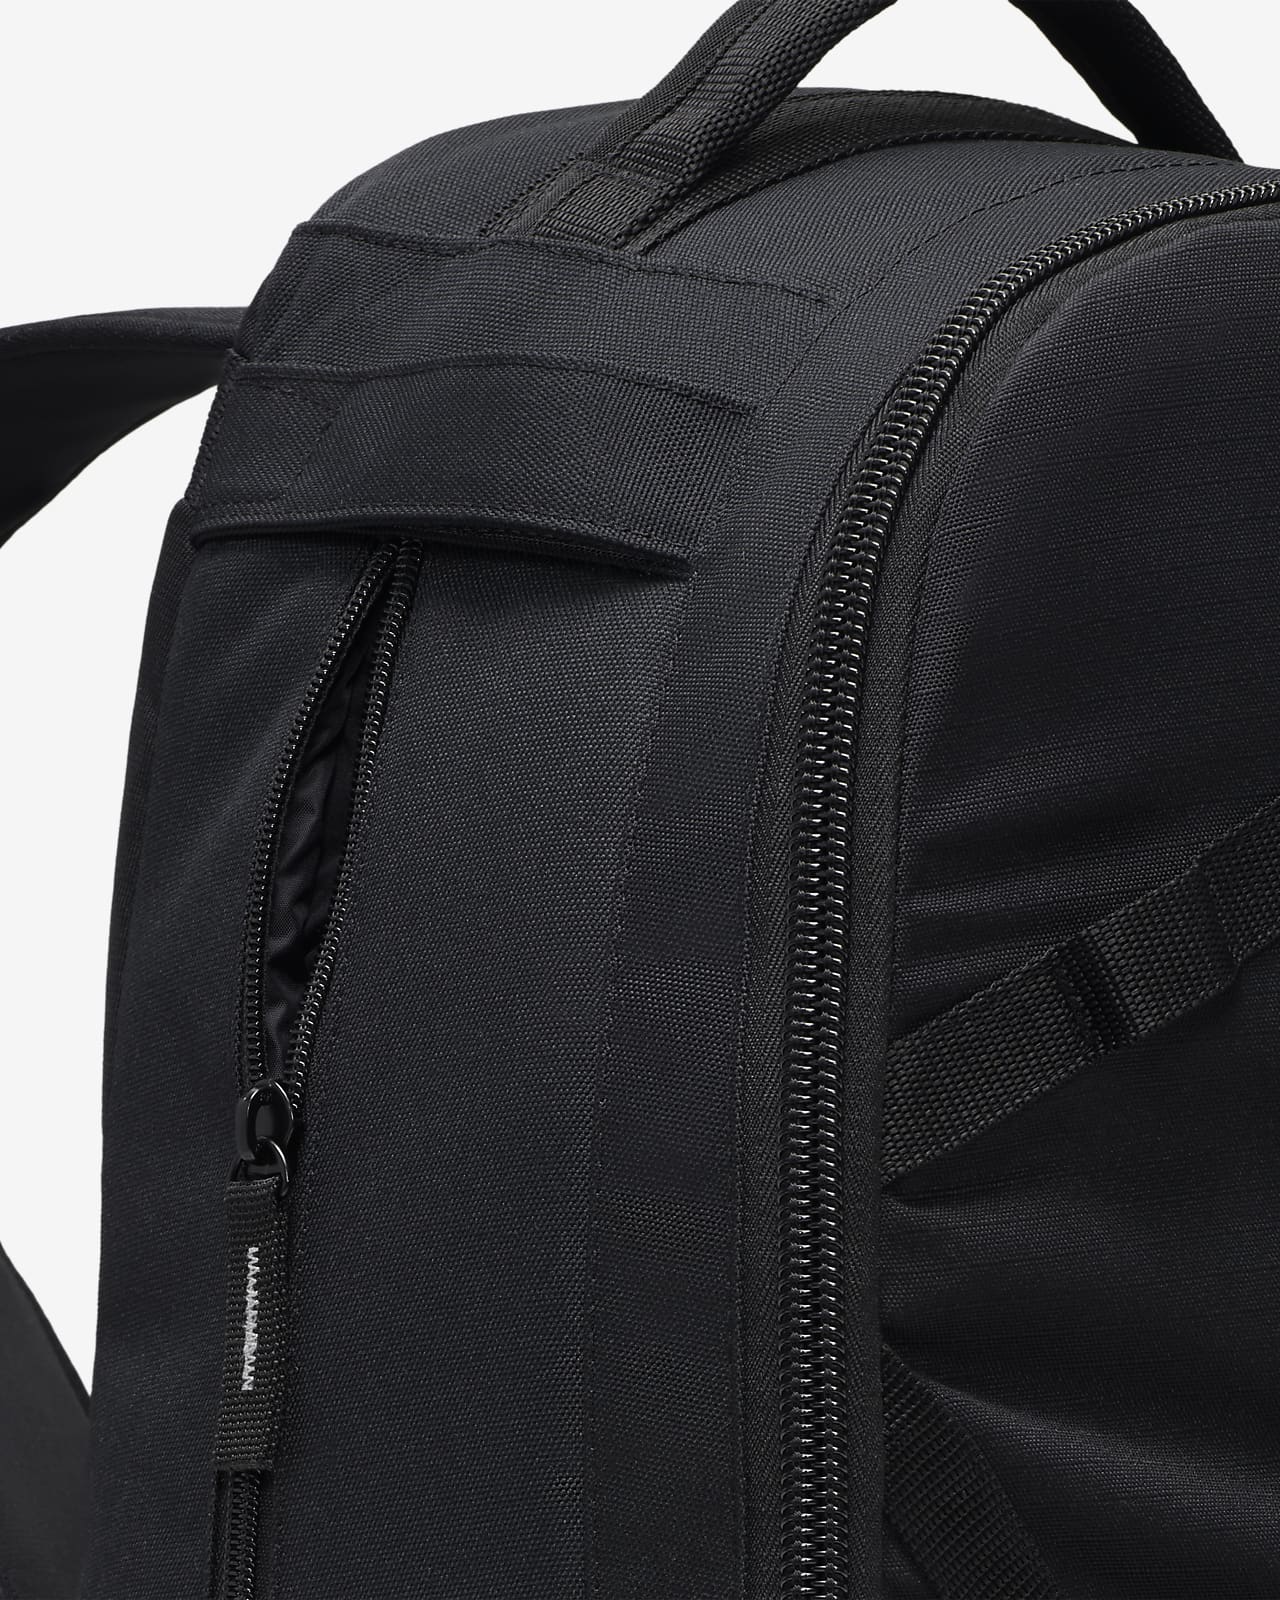 Nike Tech Backpack